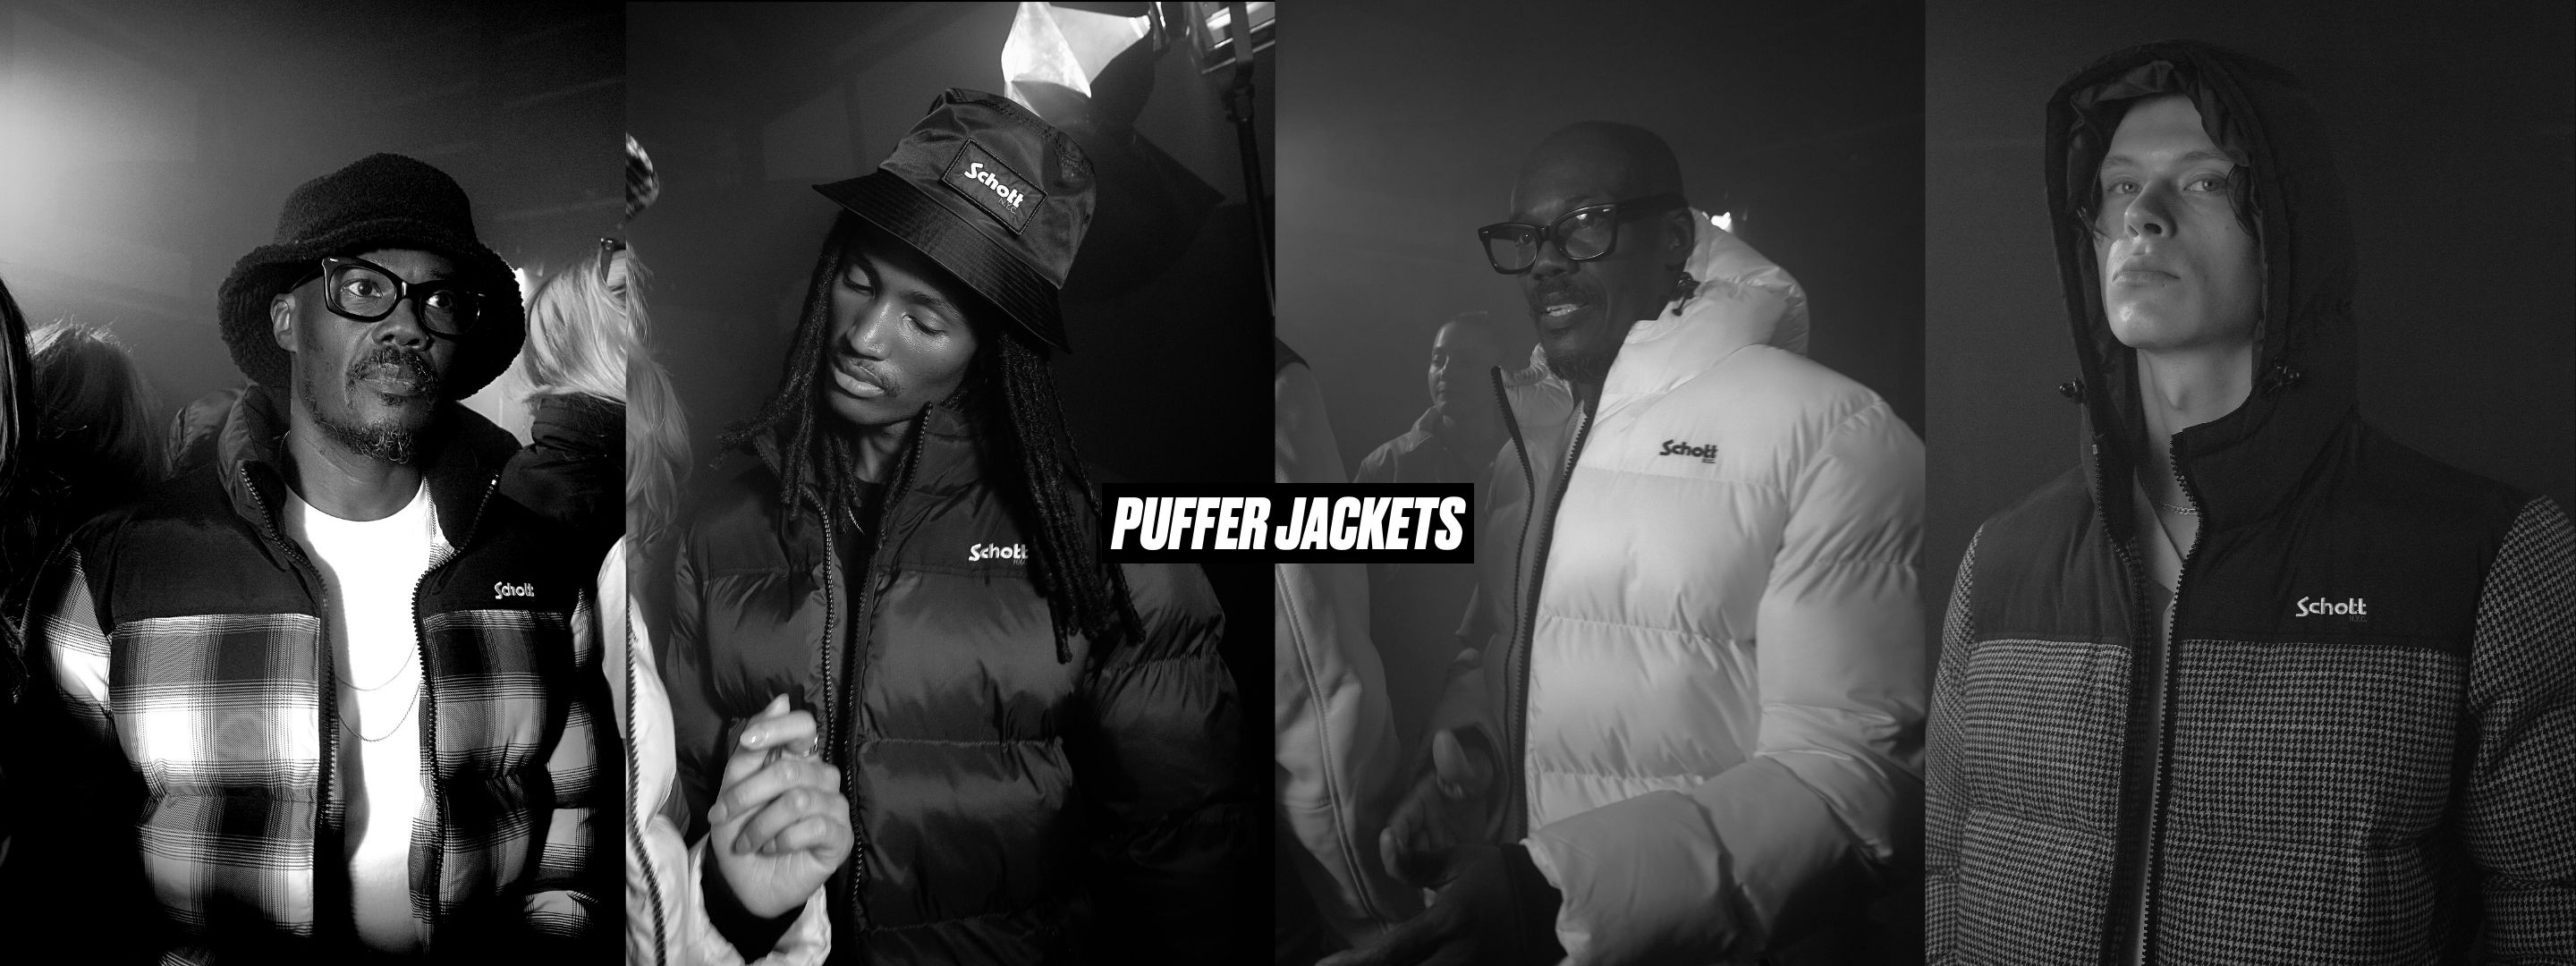 Puffer jackets